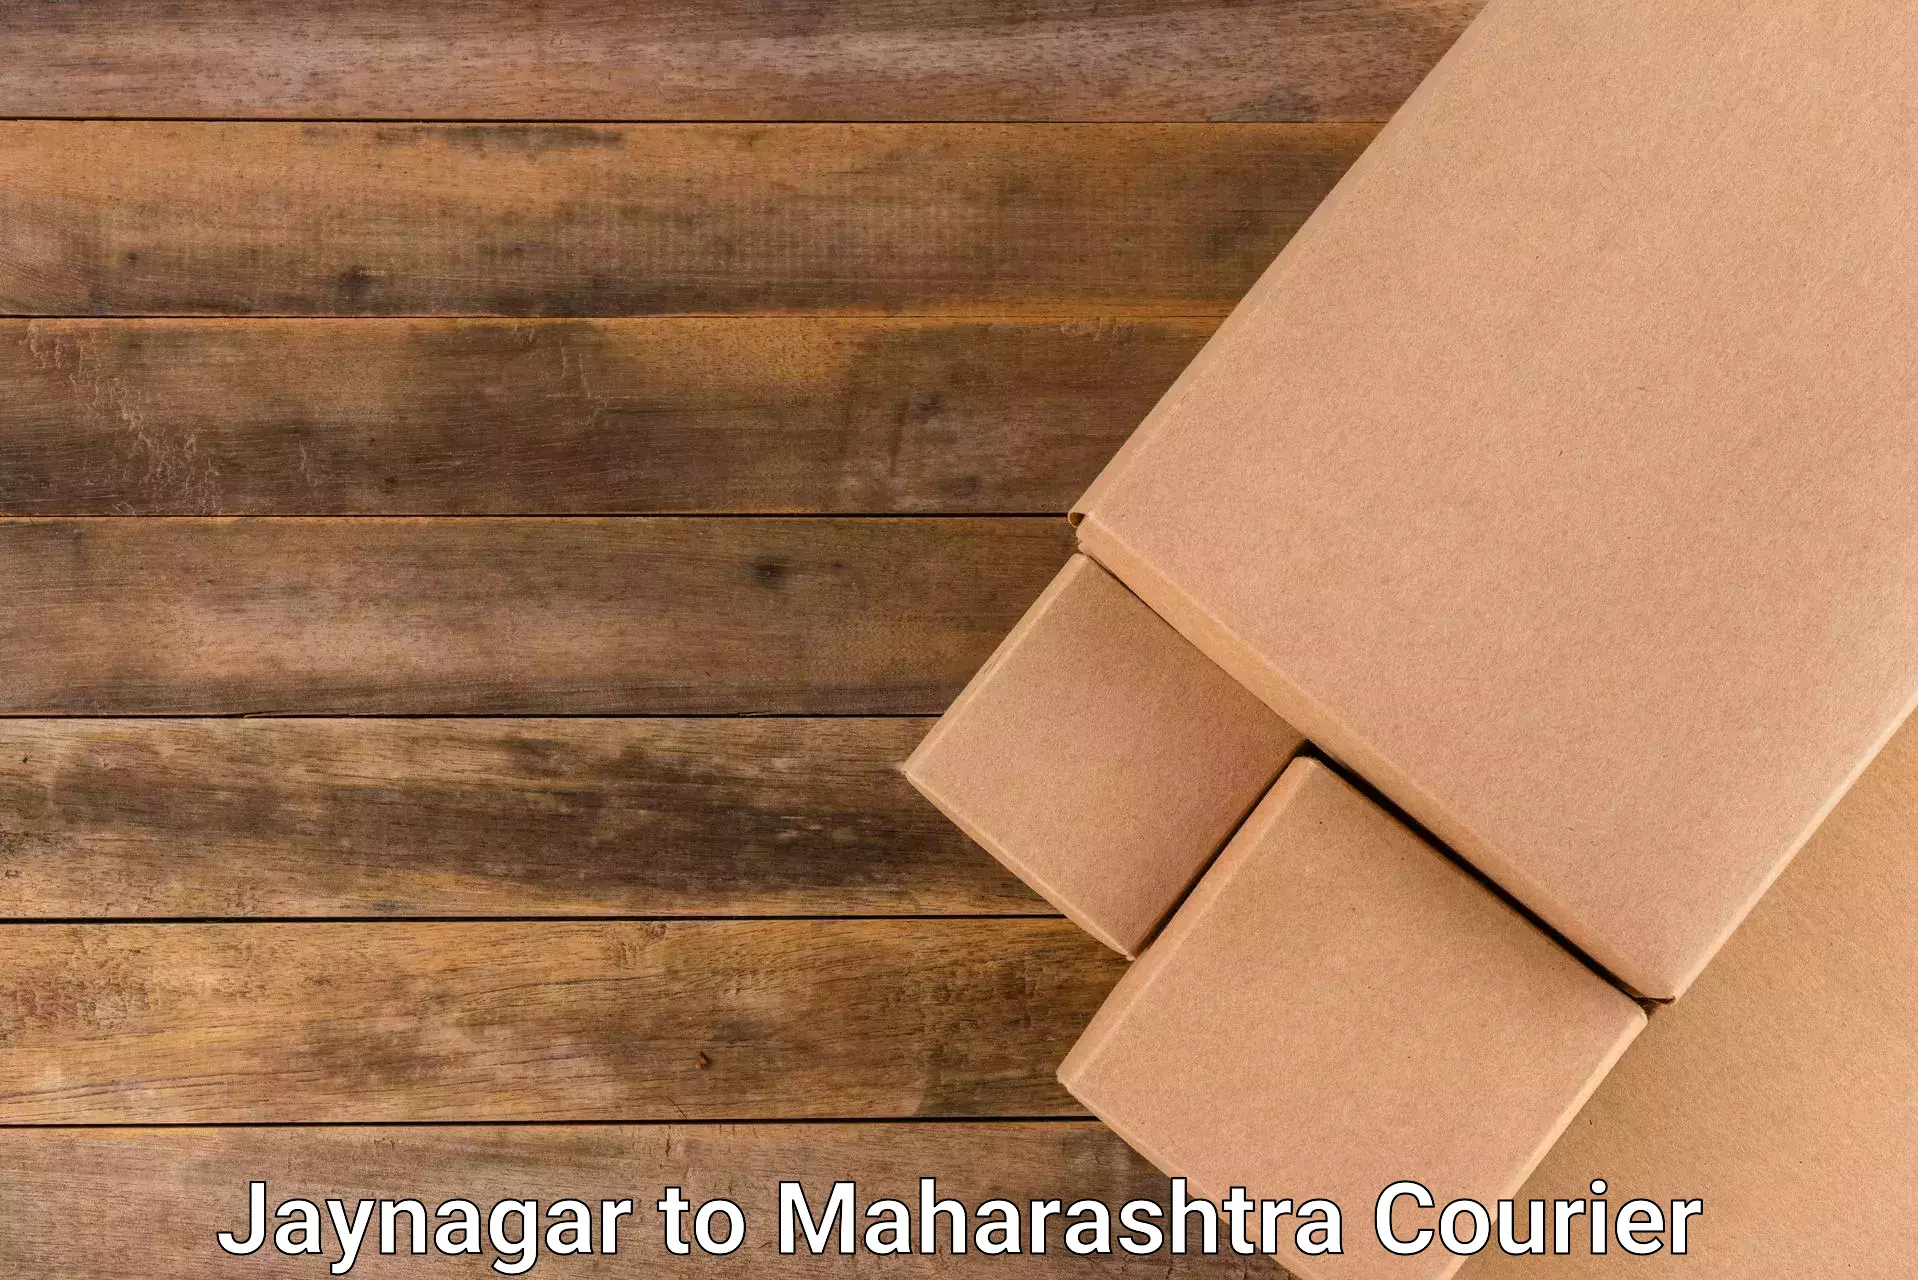 Enhanced shipping experience Jaynagar to IIT Mumbai